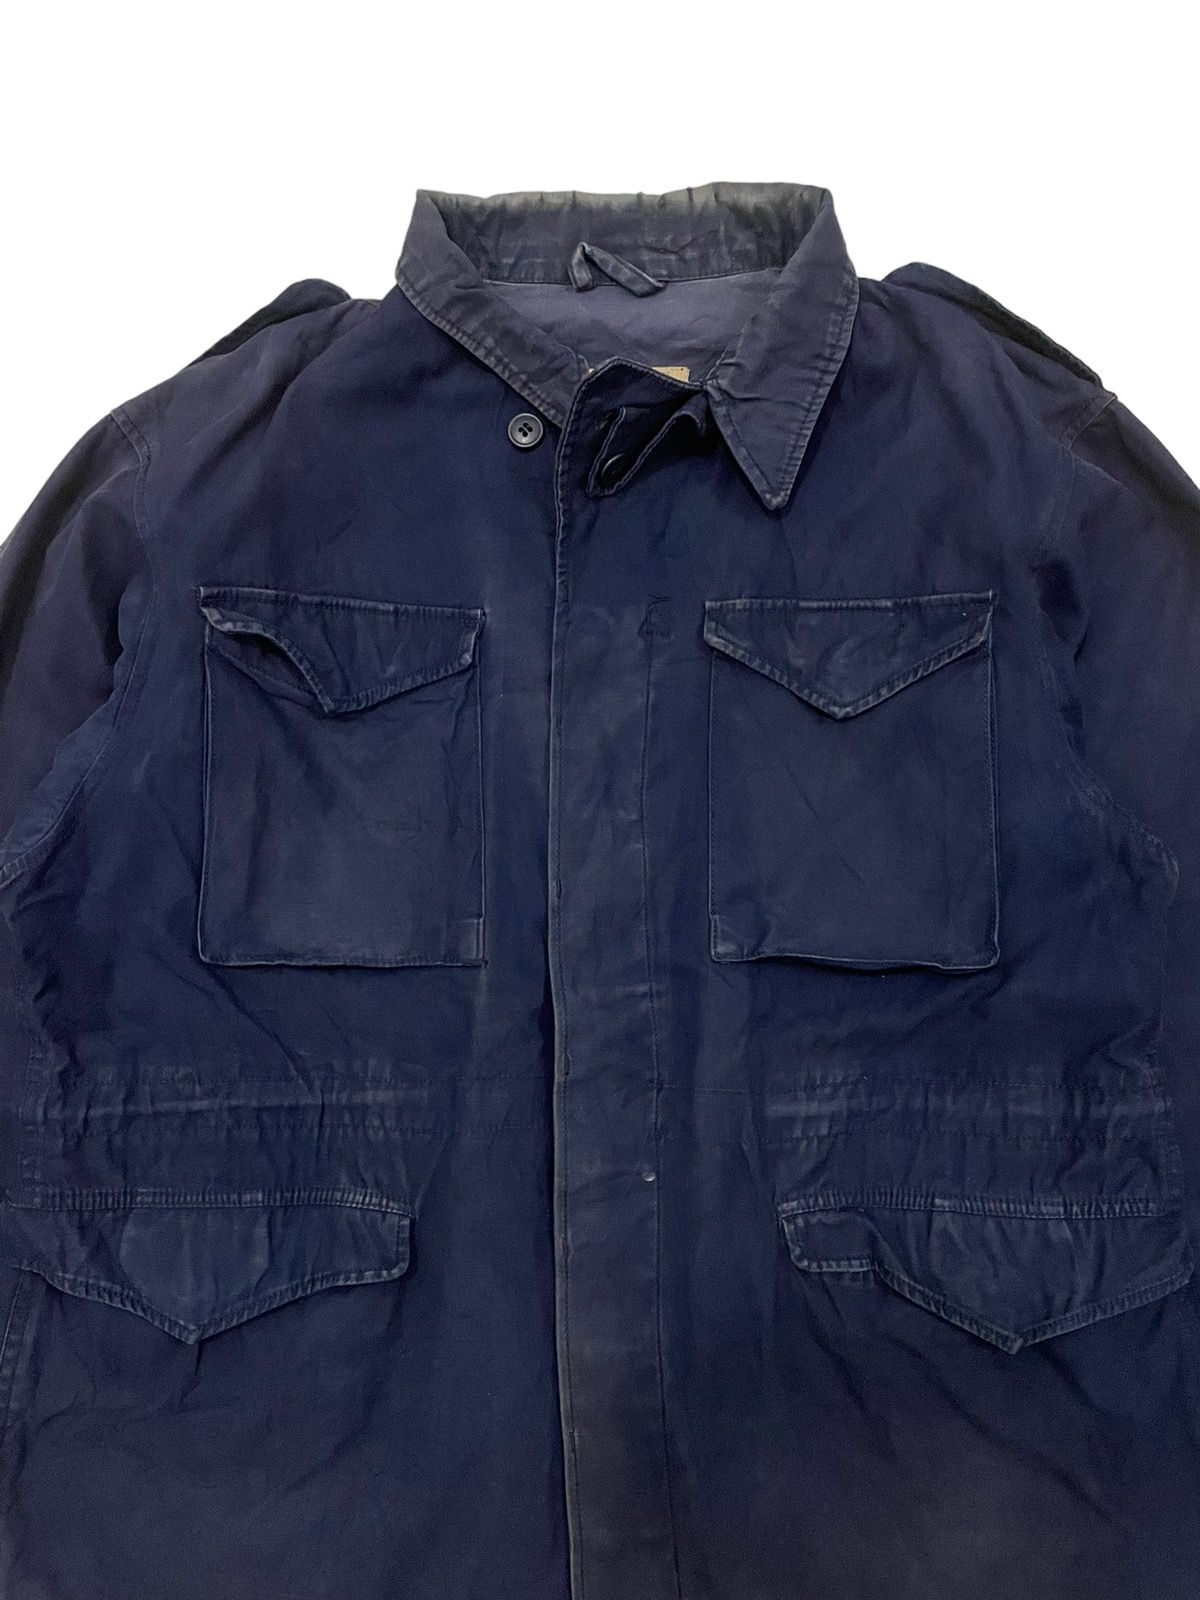 Vintage Vintage Army M-65 Overshirt Jacket Size US L / EU 52-54 / 3 - 4 Thumbnail